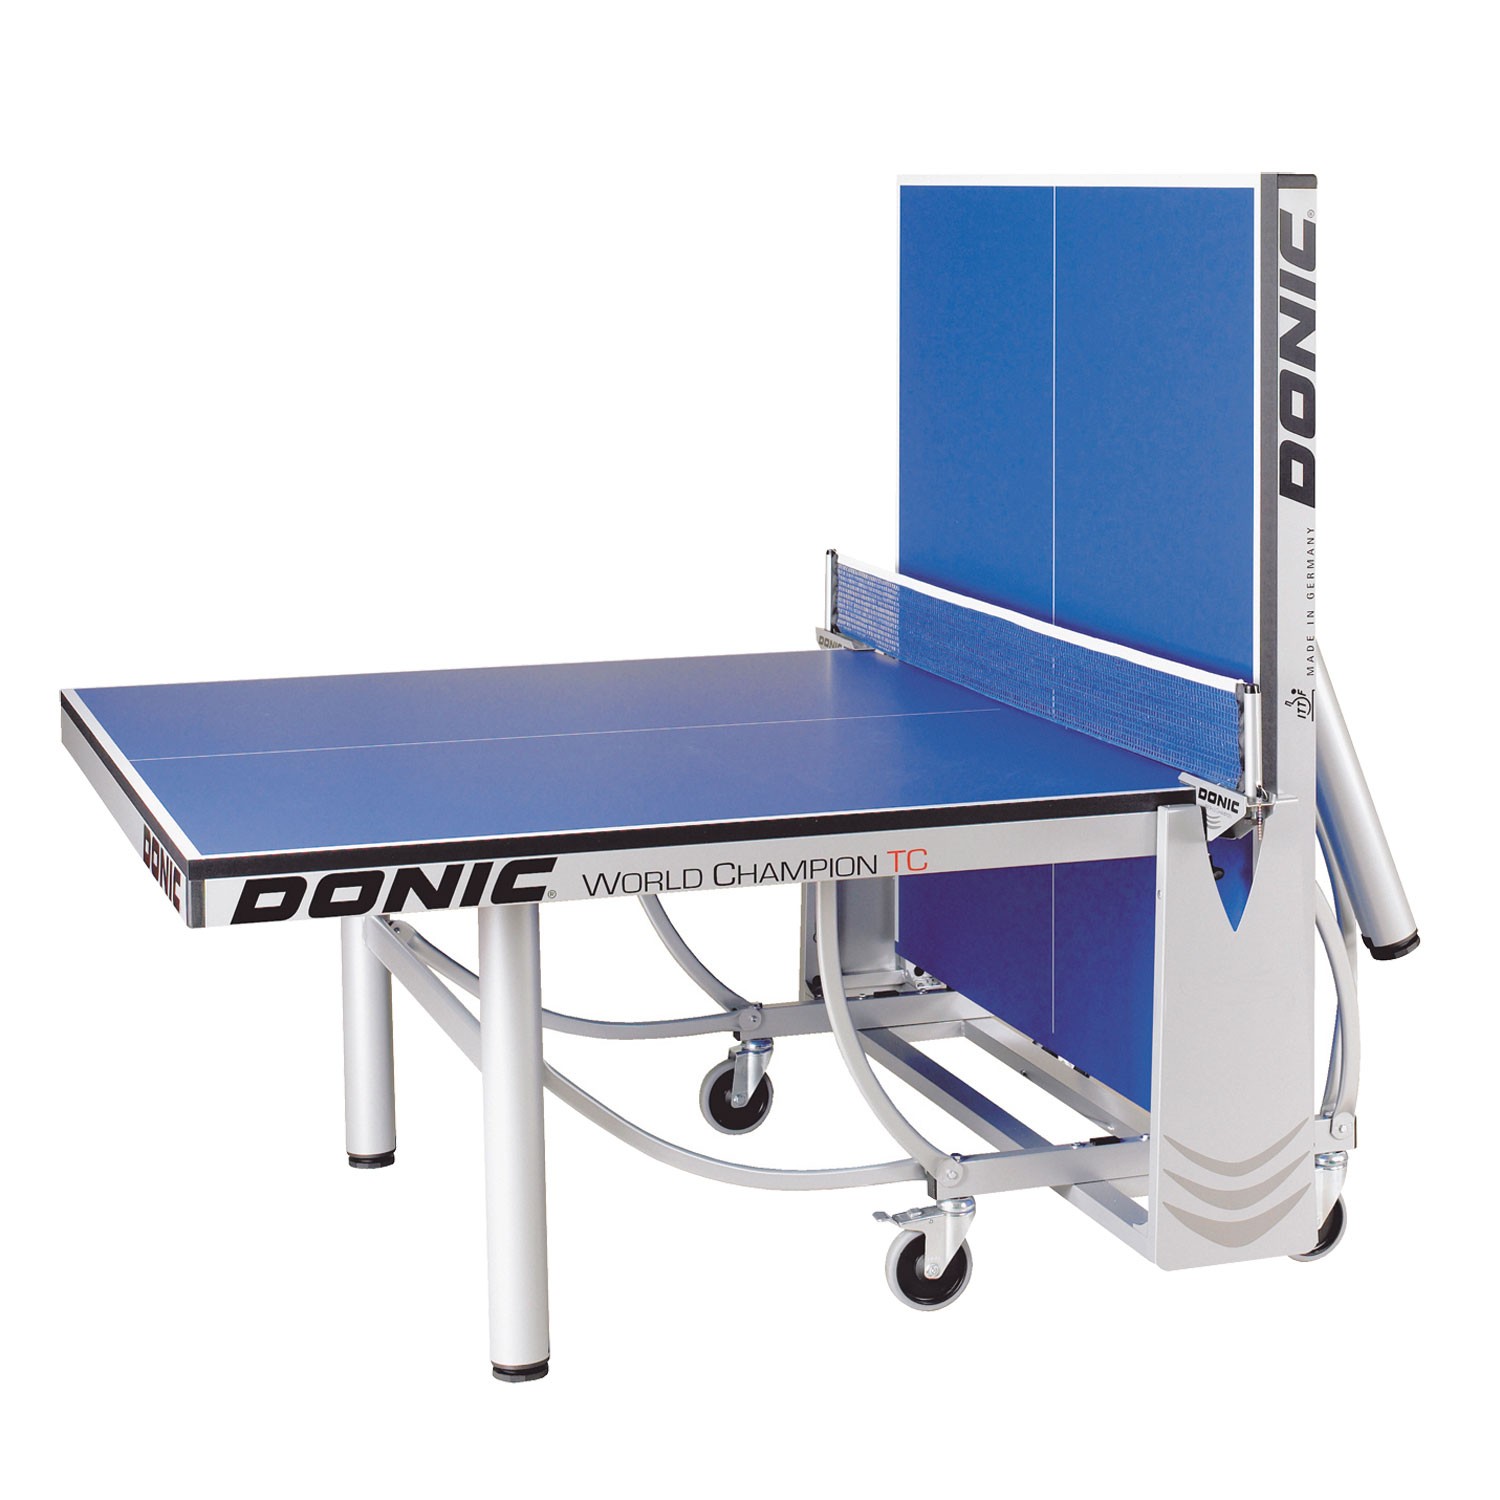 Теннисный стол Donic WORLD CHAMPION TC синий (без сетки), изображение 5